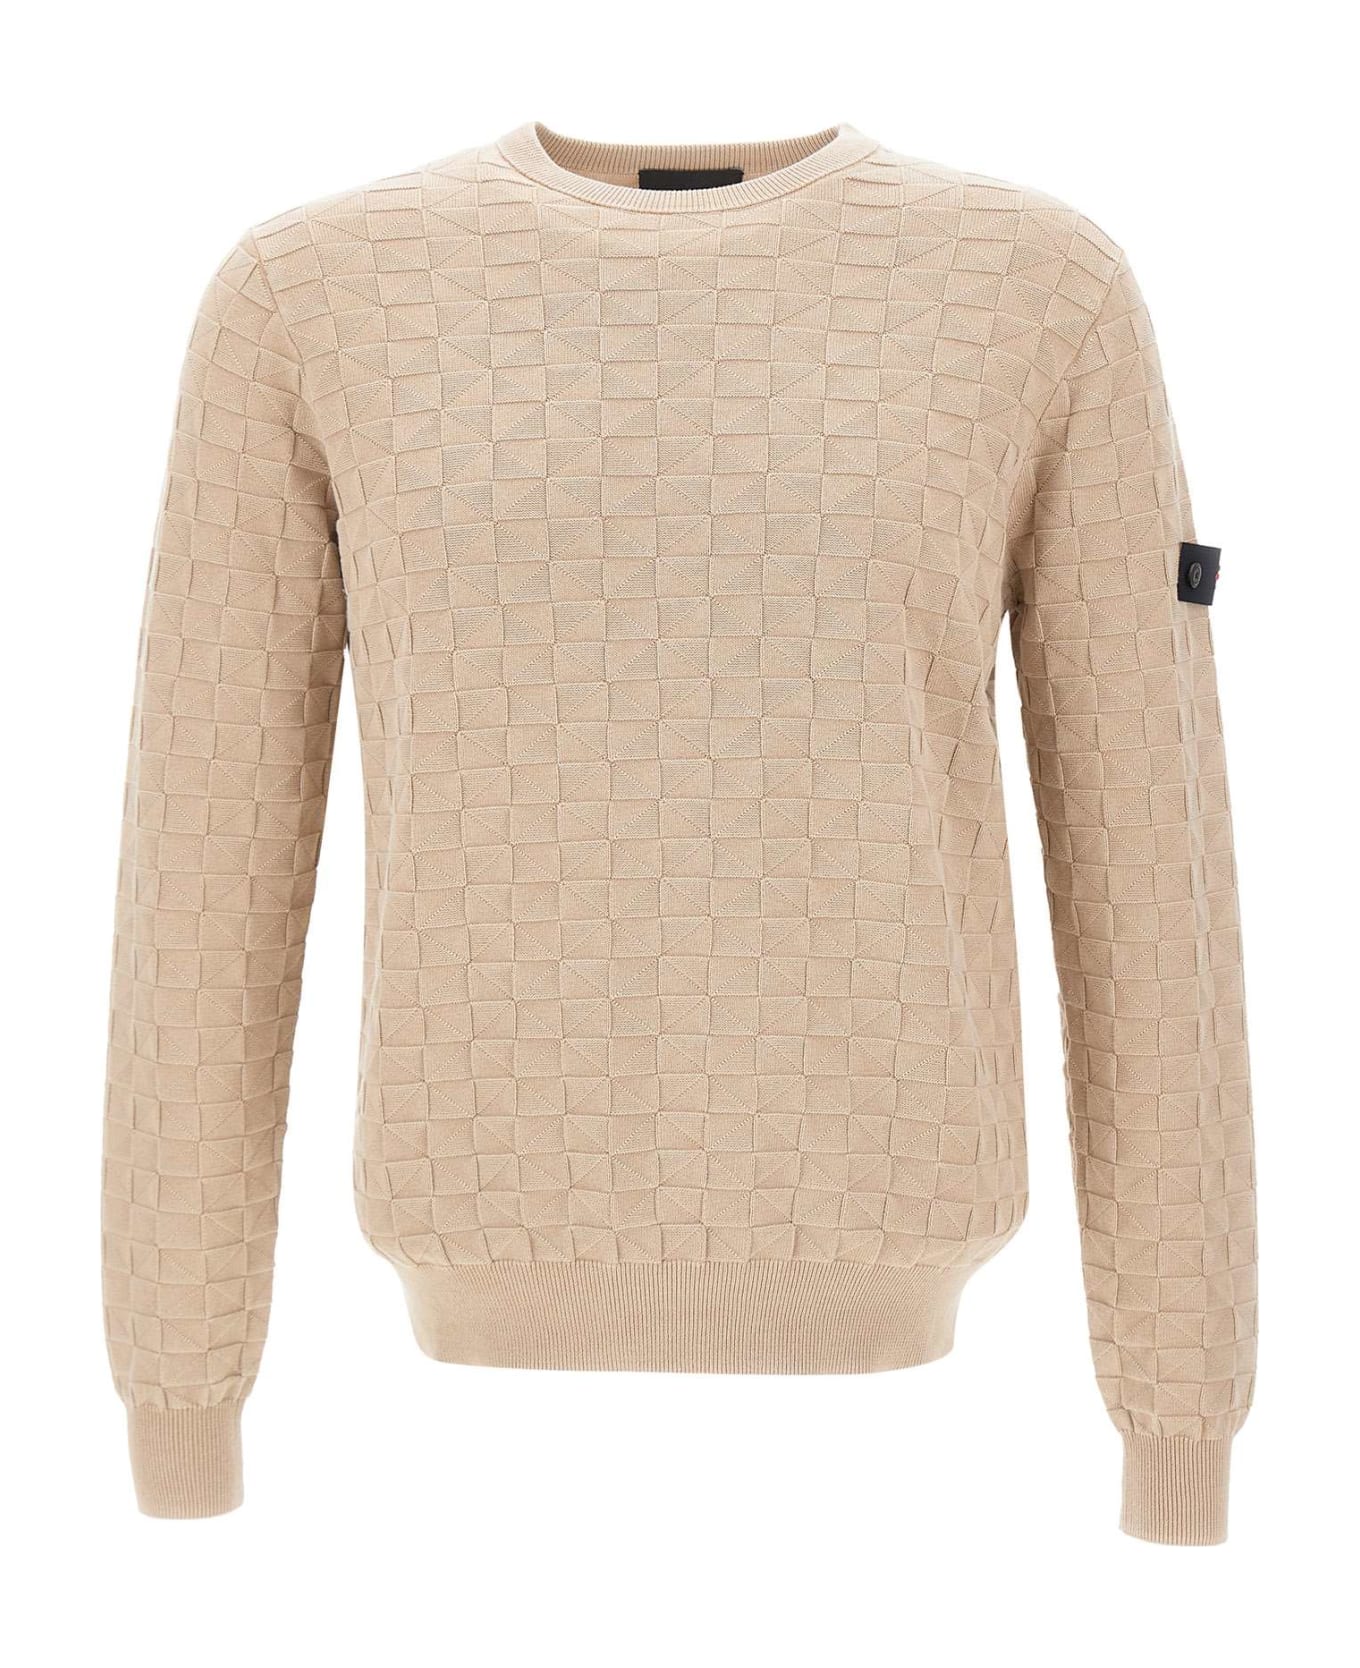 Peuterey "omnium" Cotton Sweater - BEIGE